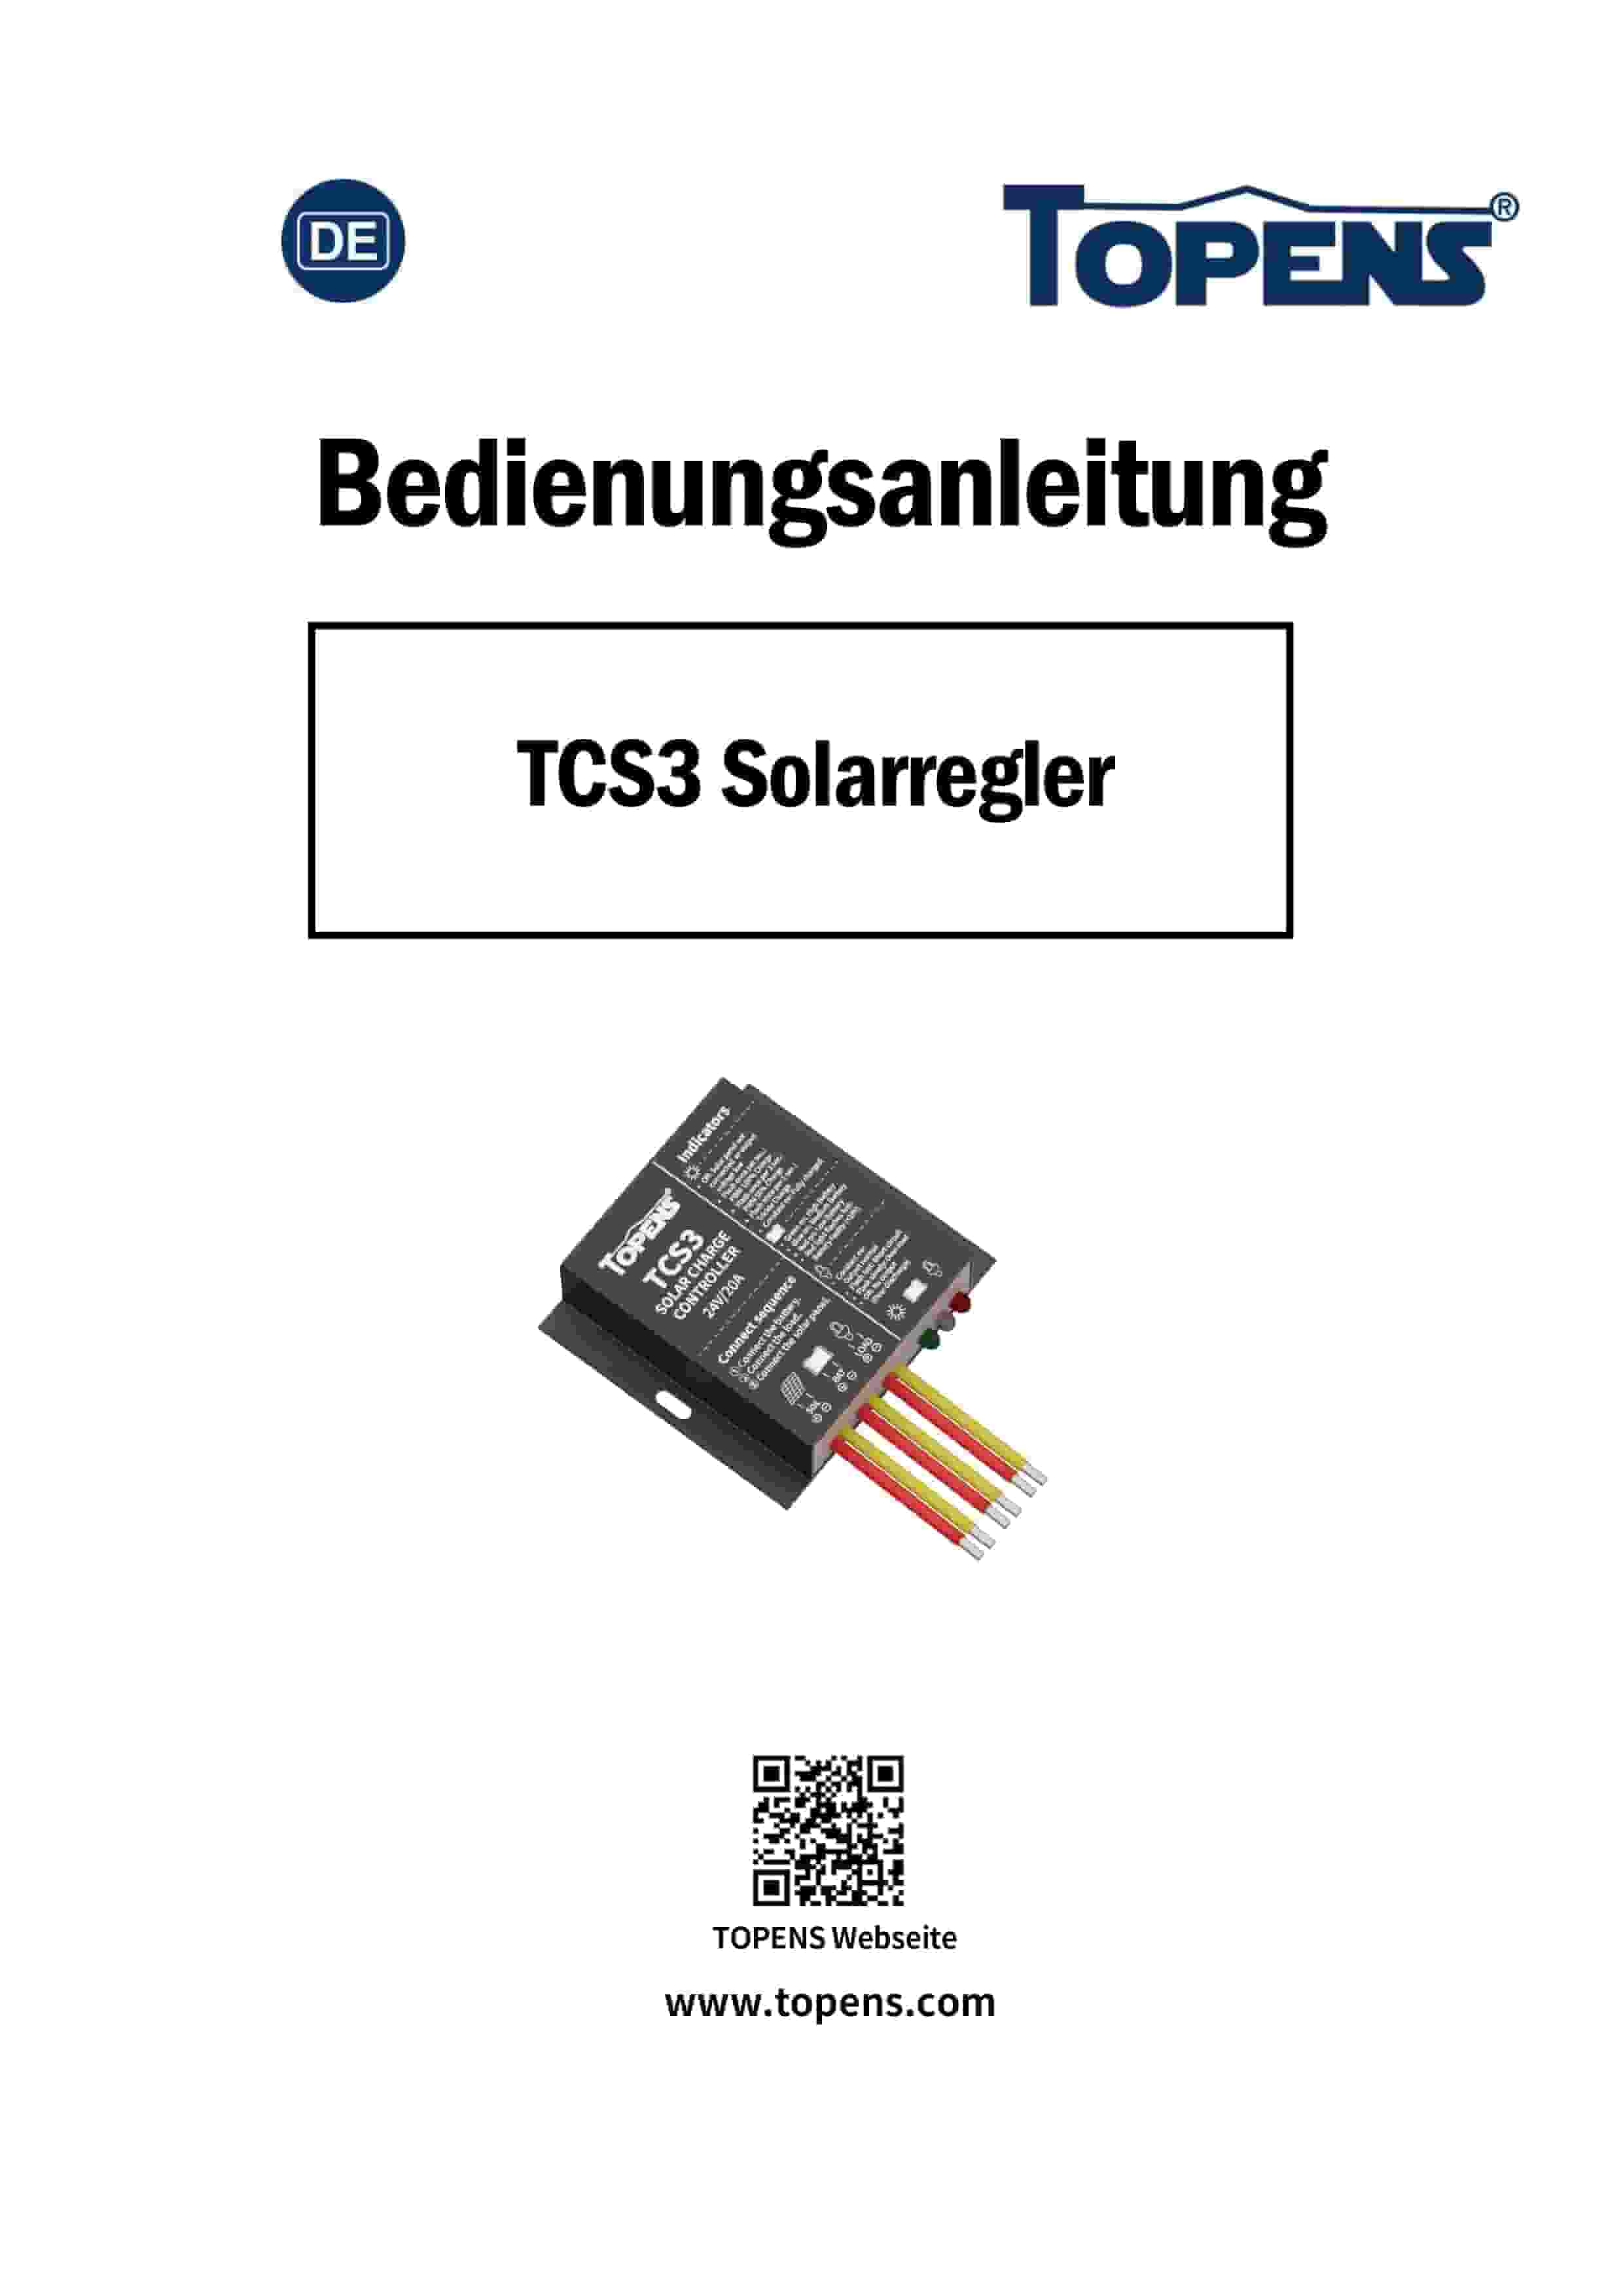 TCS3 Solarregler.jpg__PID:b805a61c-aabe-4bd9-8d2d-d38bc3552dbd